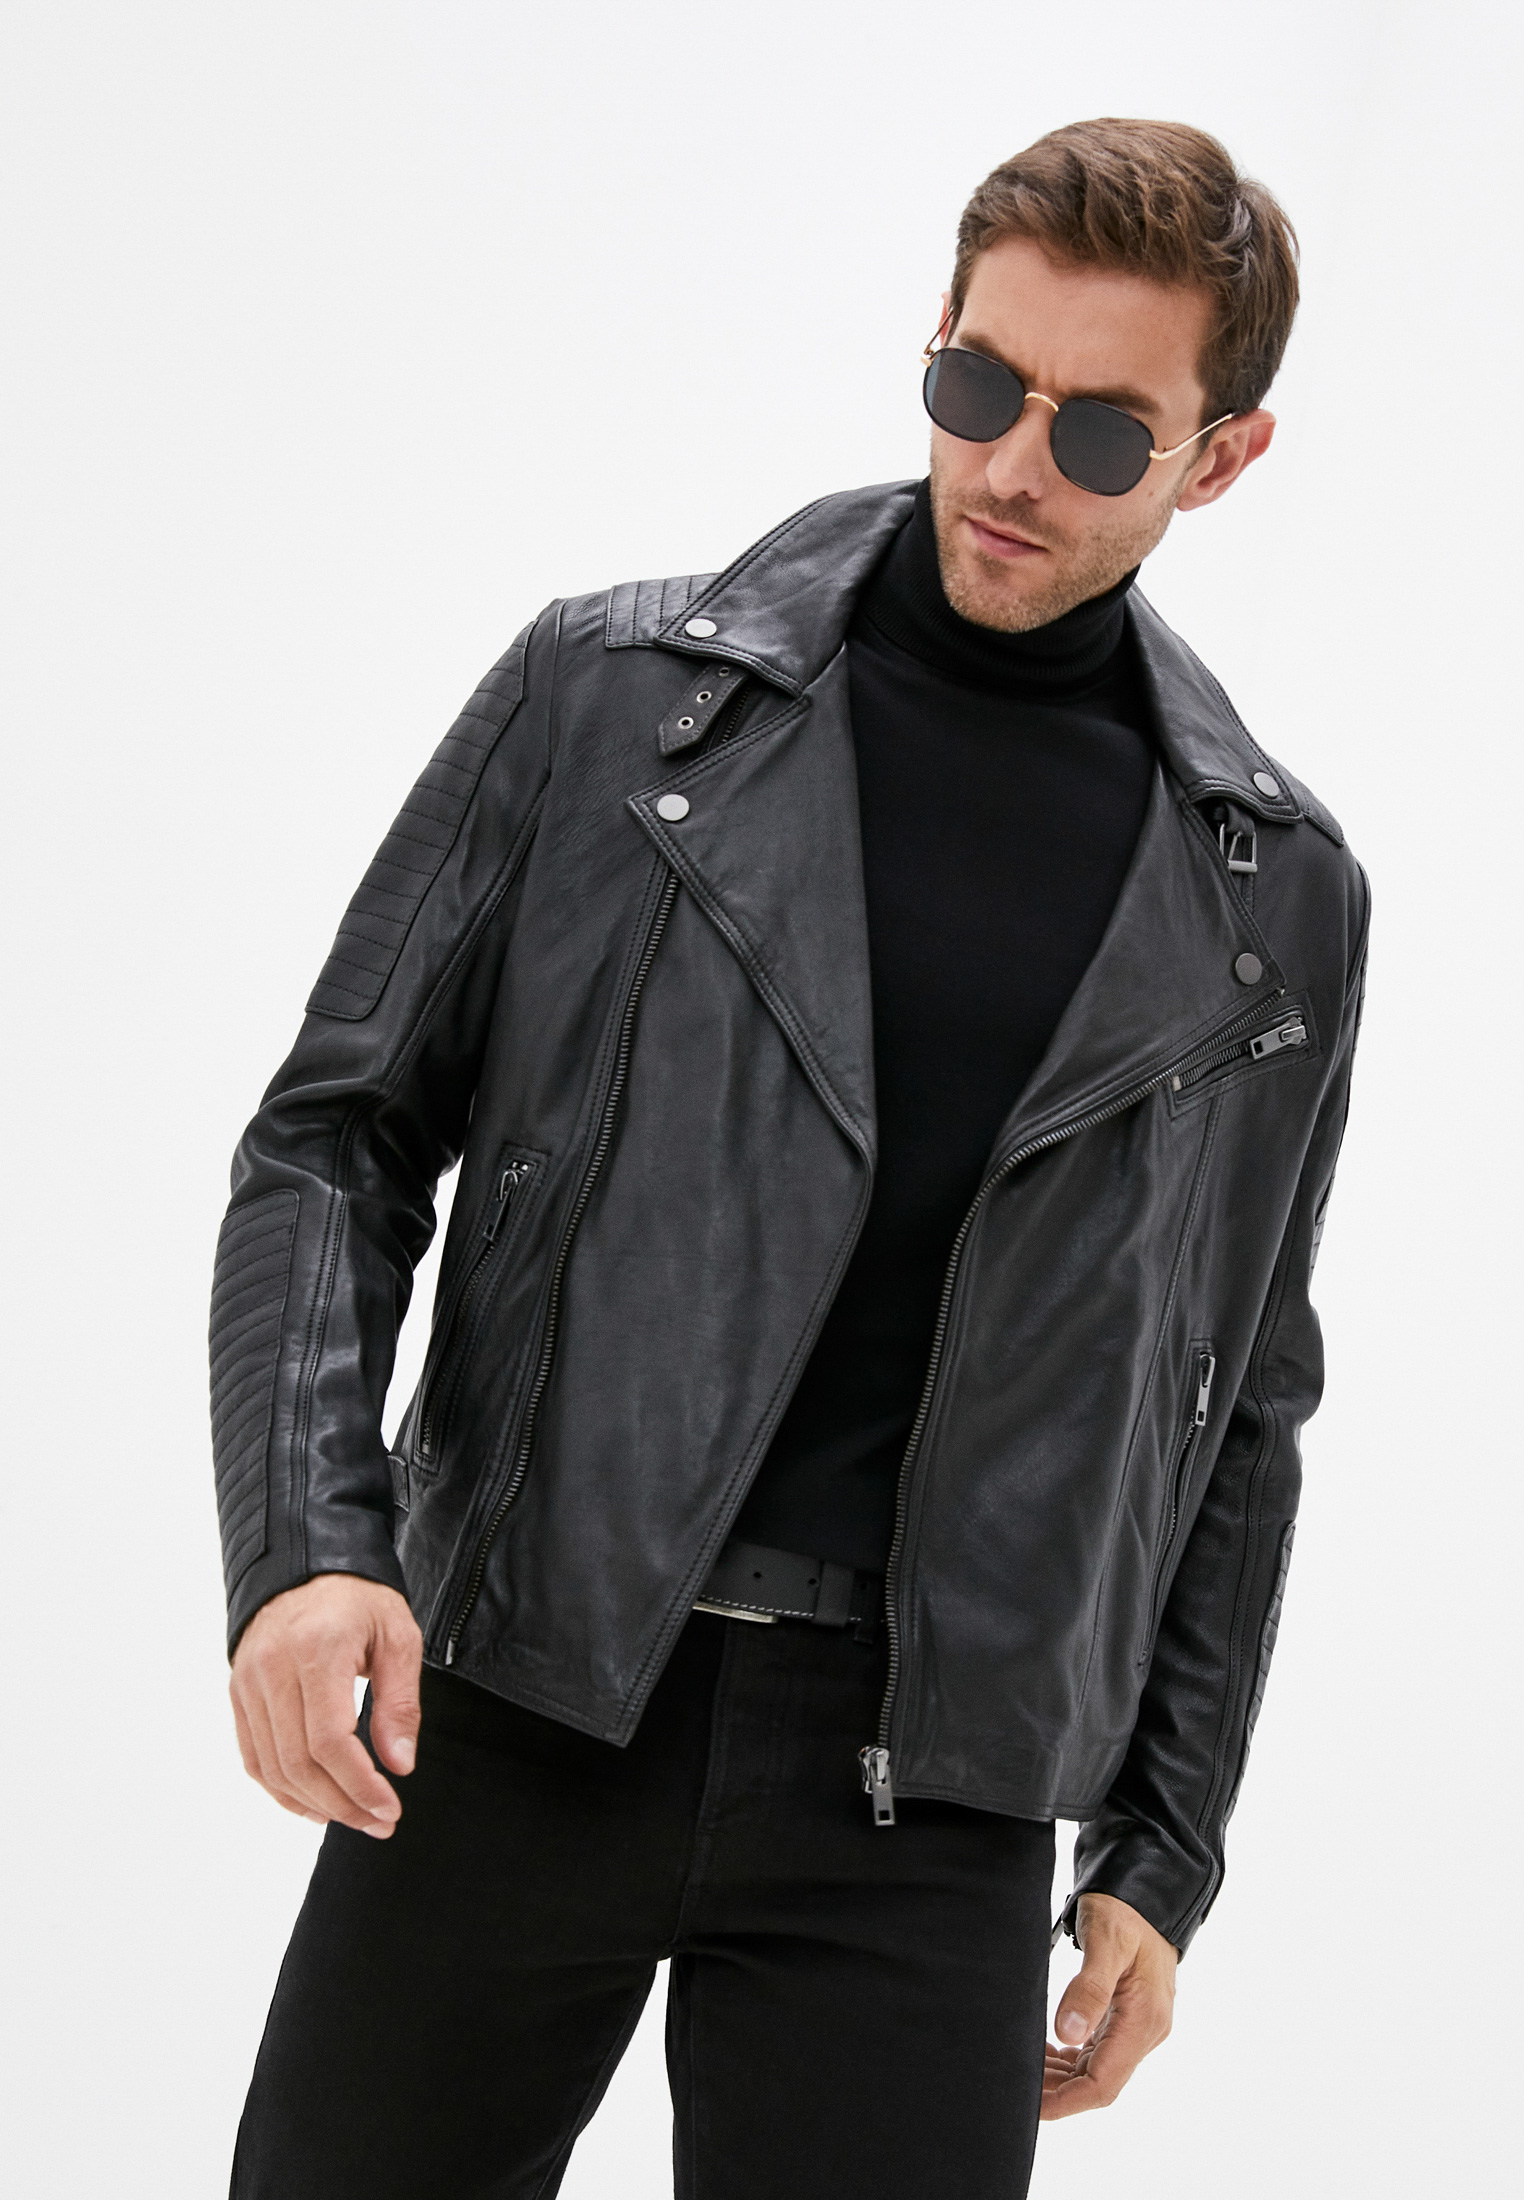 Куртка кожаная Urban Fashion for Men, цвет: черный, MP002XM1ZCK5 — купить в интернет-магазине Lamoda